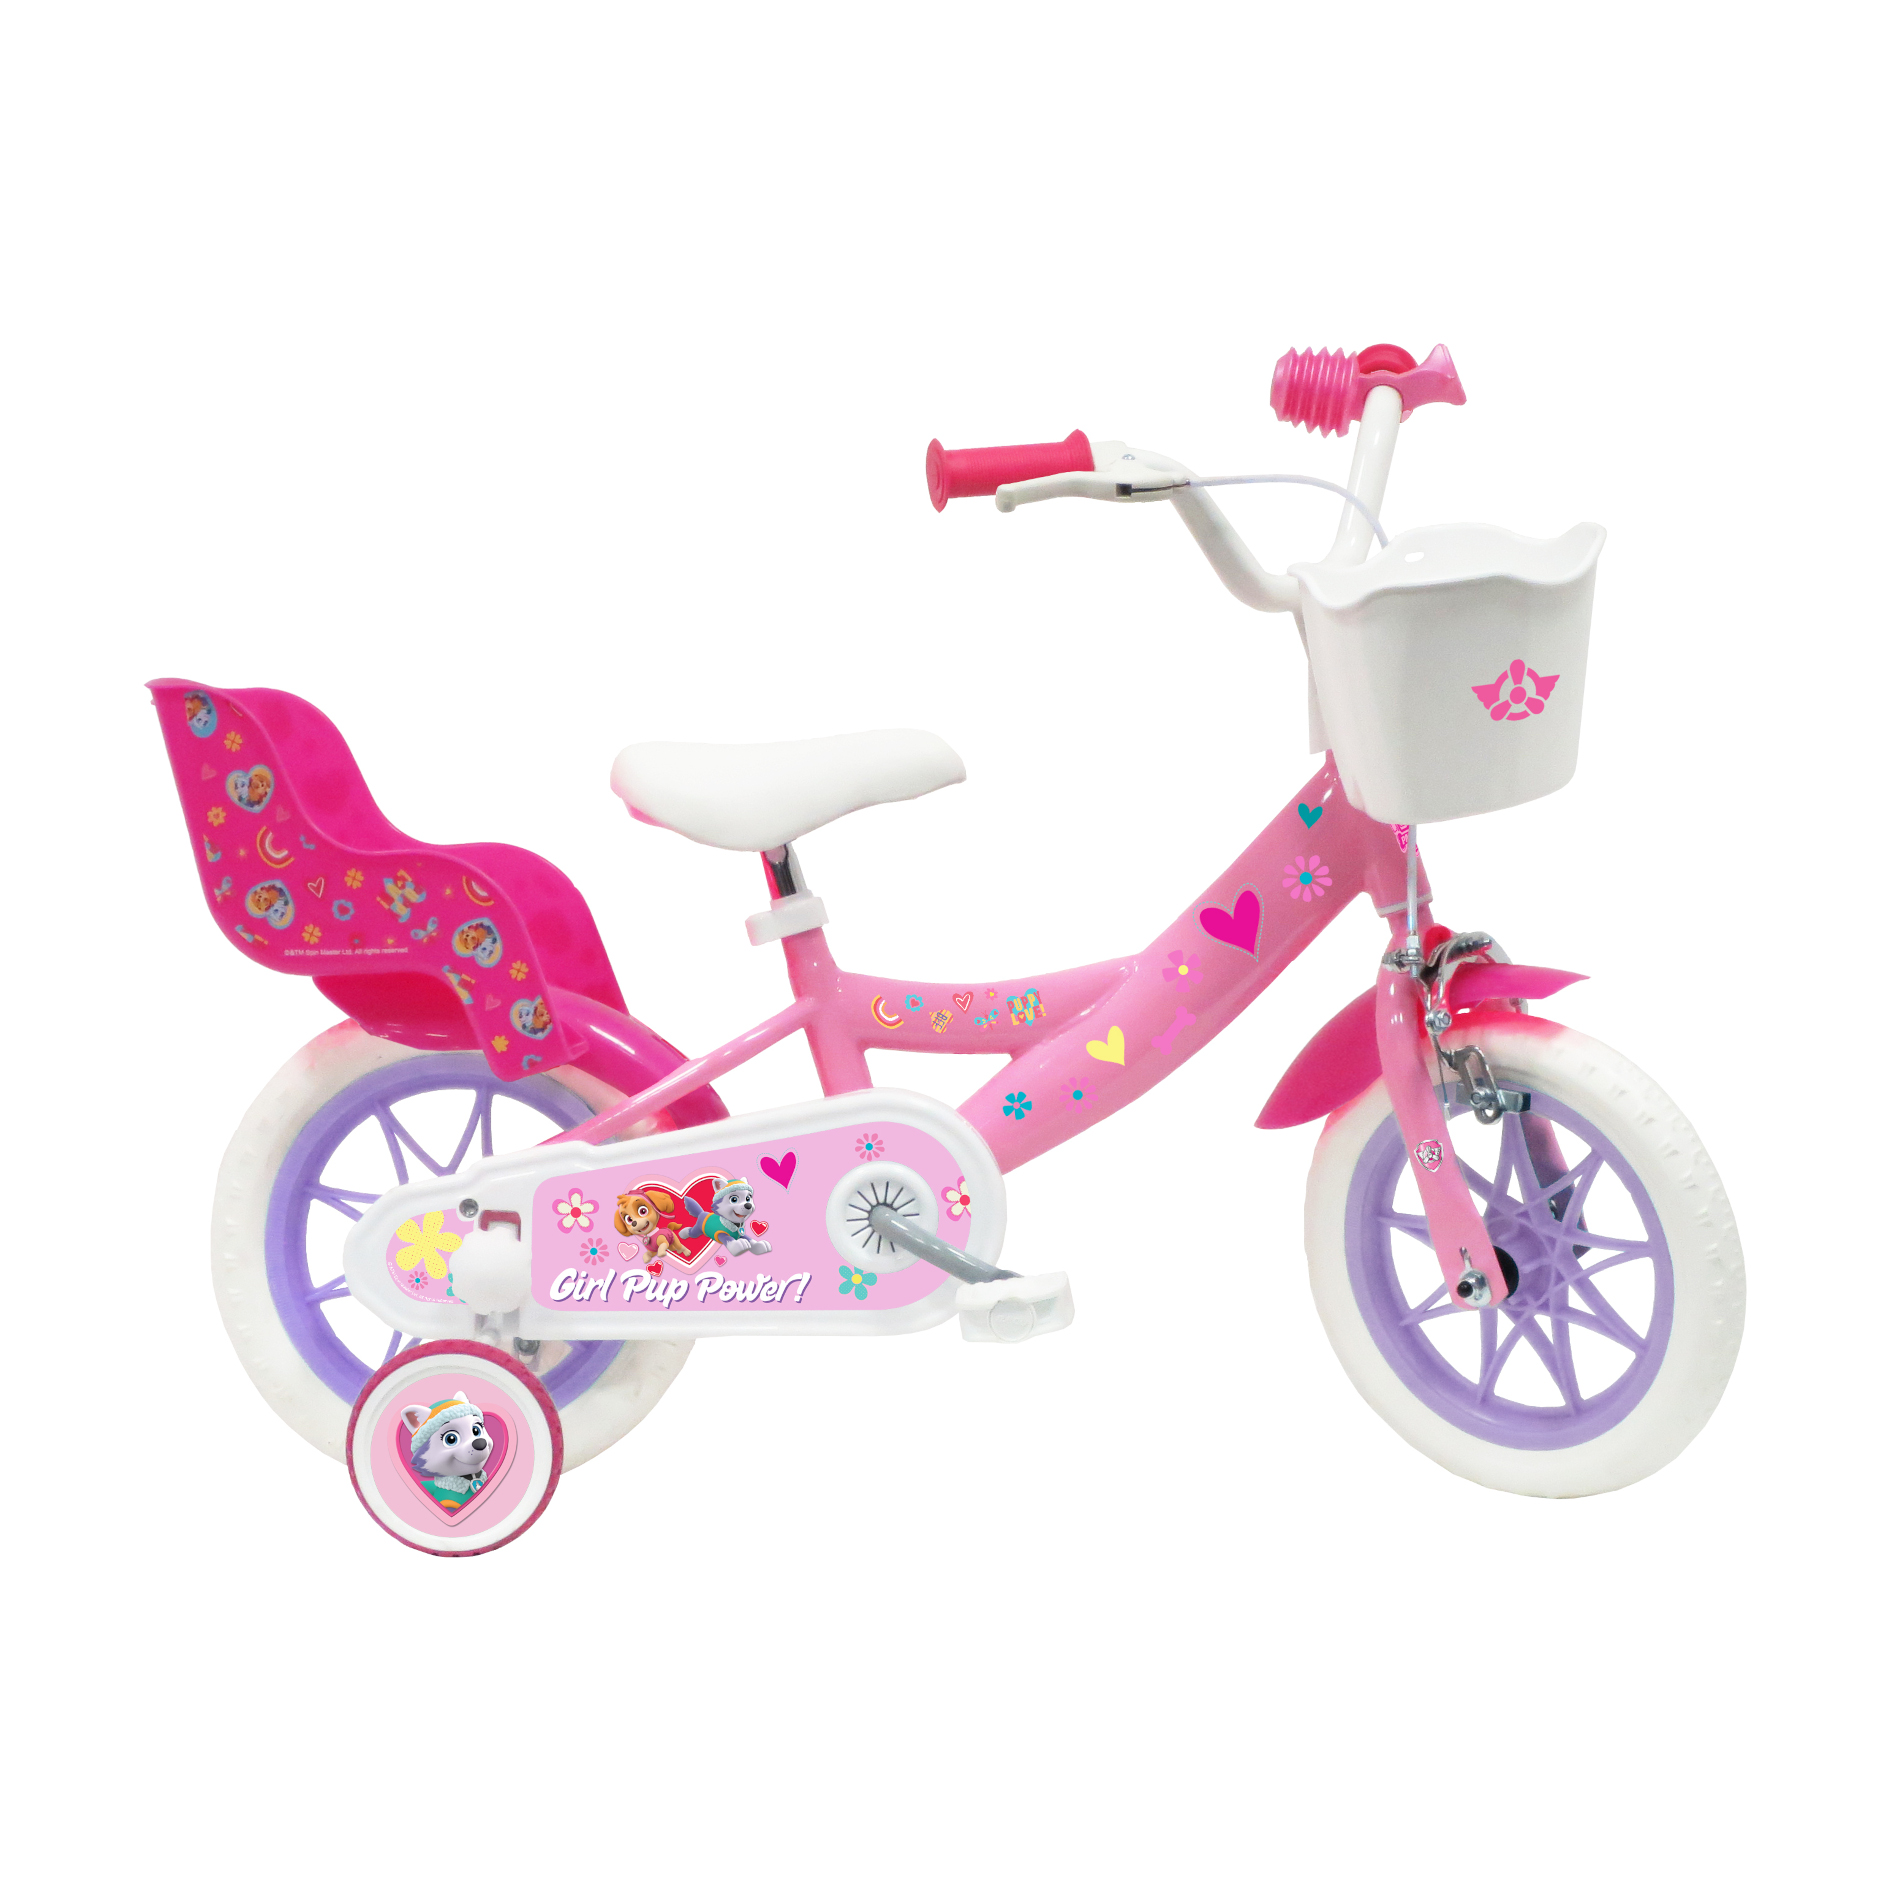 Bicicleta Niña 12 Pulgadas Patrulla Canina 3-5 Años - rosa - 